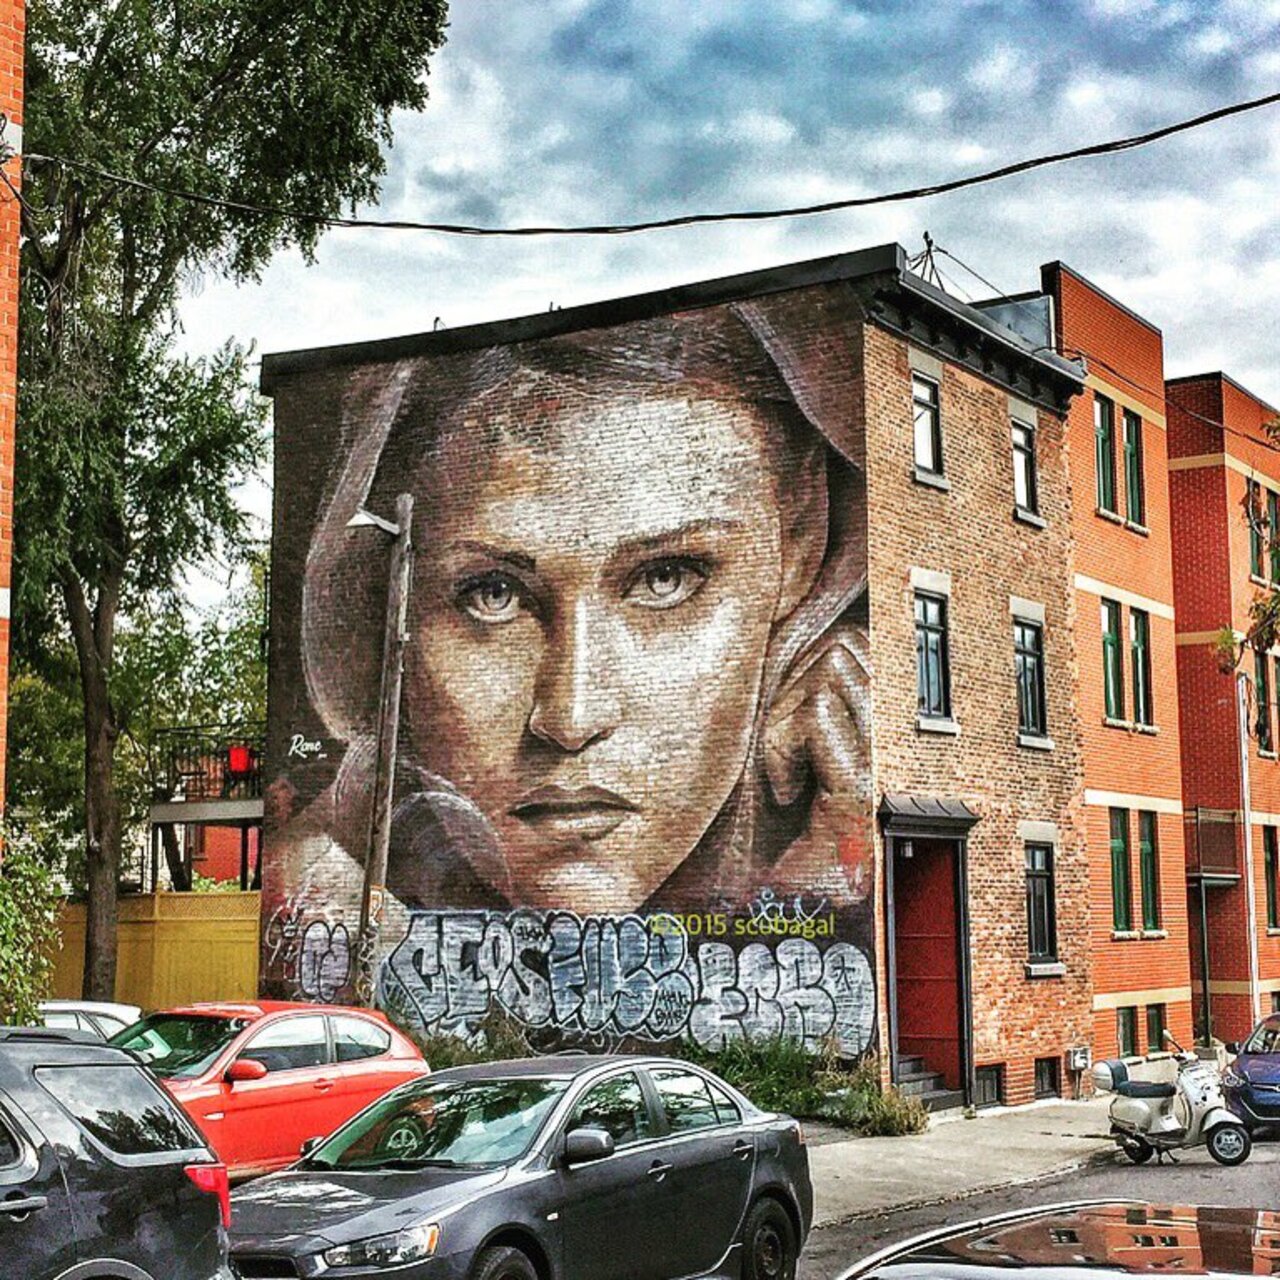 The Walkflower | #Montreal #art #graffiti #streetart #streetphotography https://t.co/NzqkNrV7Dl https://goo.gl/t4fpx2